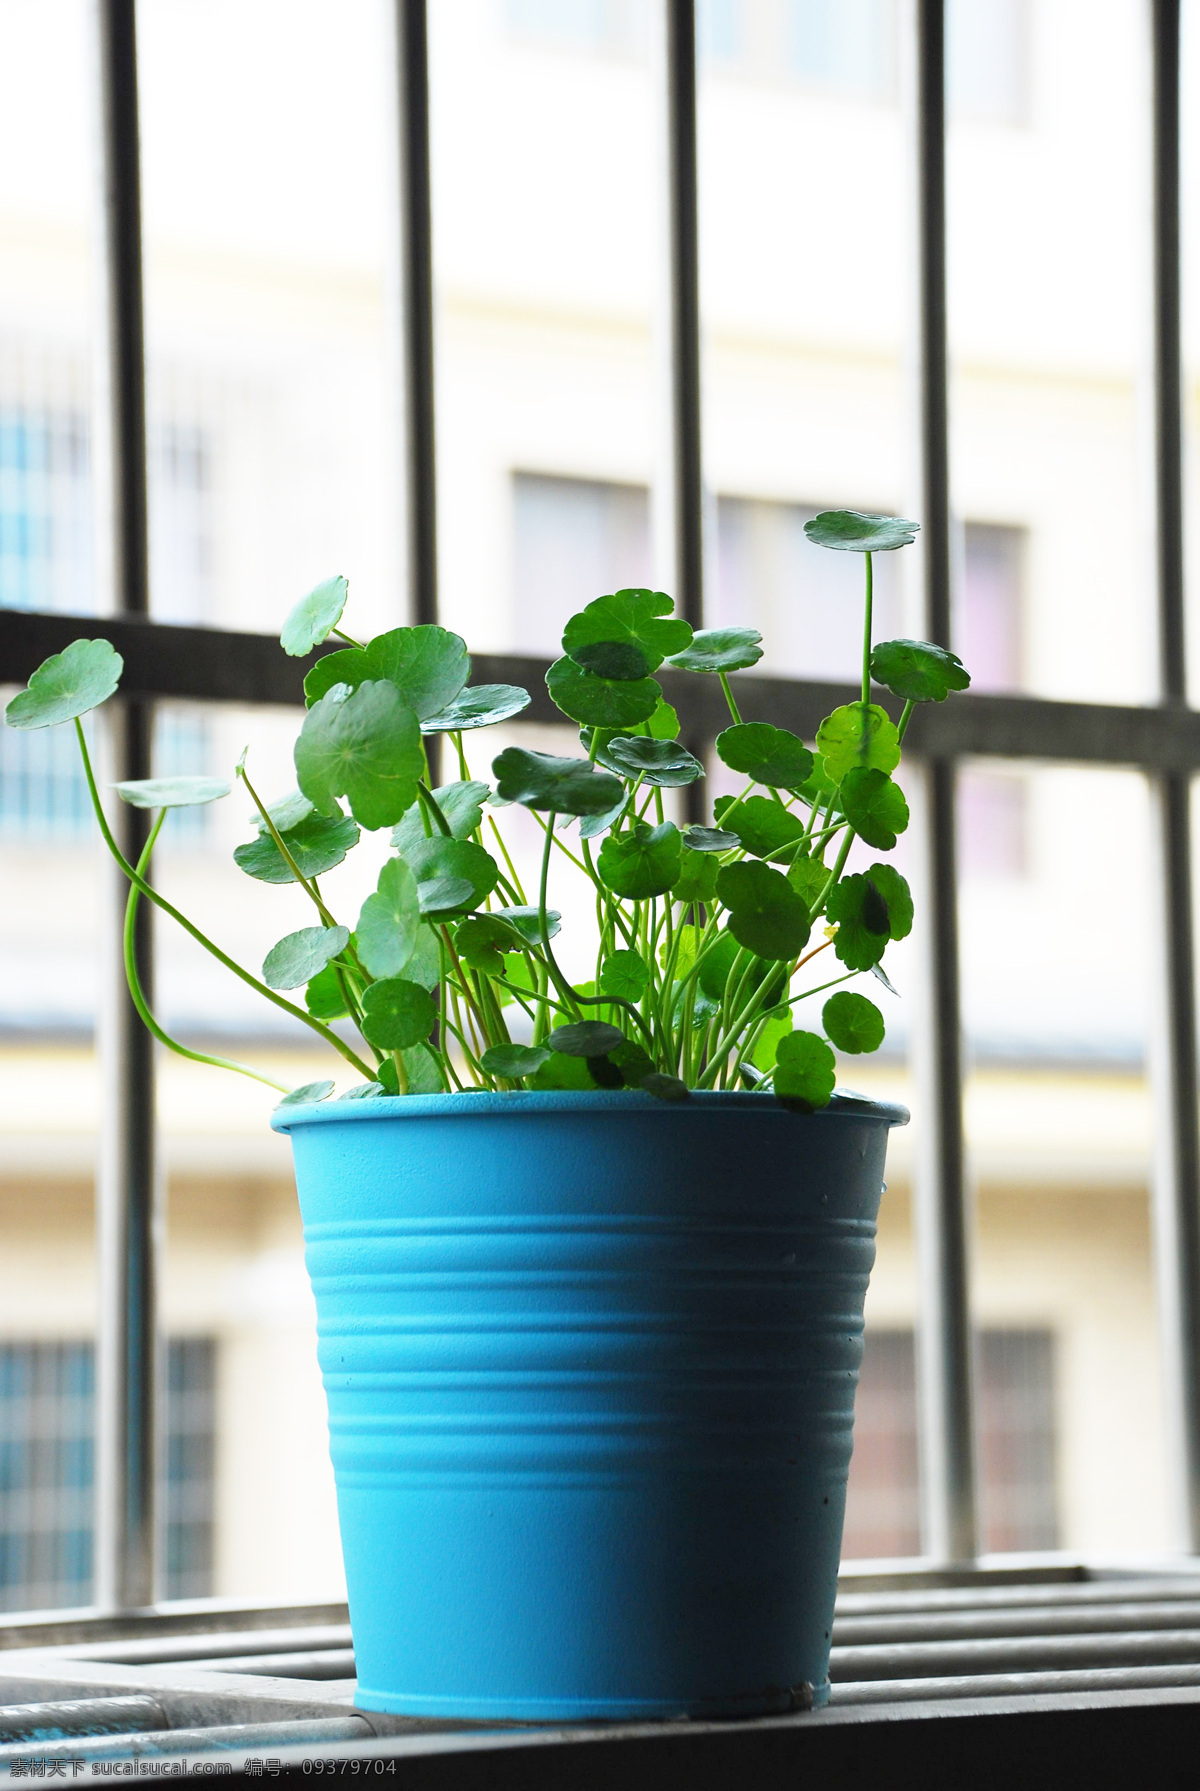 自家养的植物 铜钱草 植物 绿色 环保 蓝色 罐子 窗台 花草 生物世界